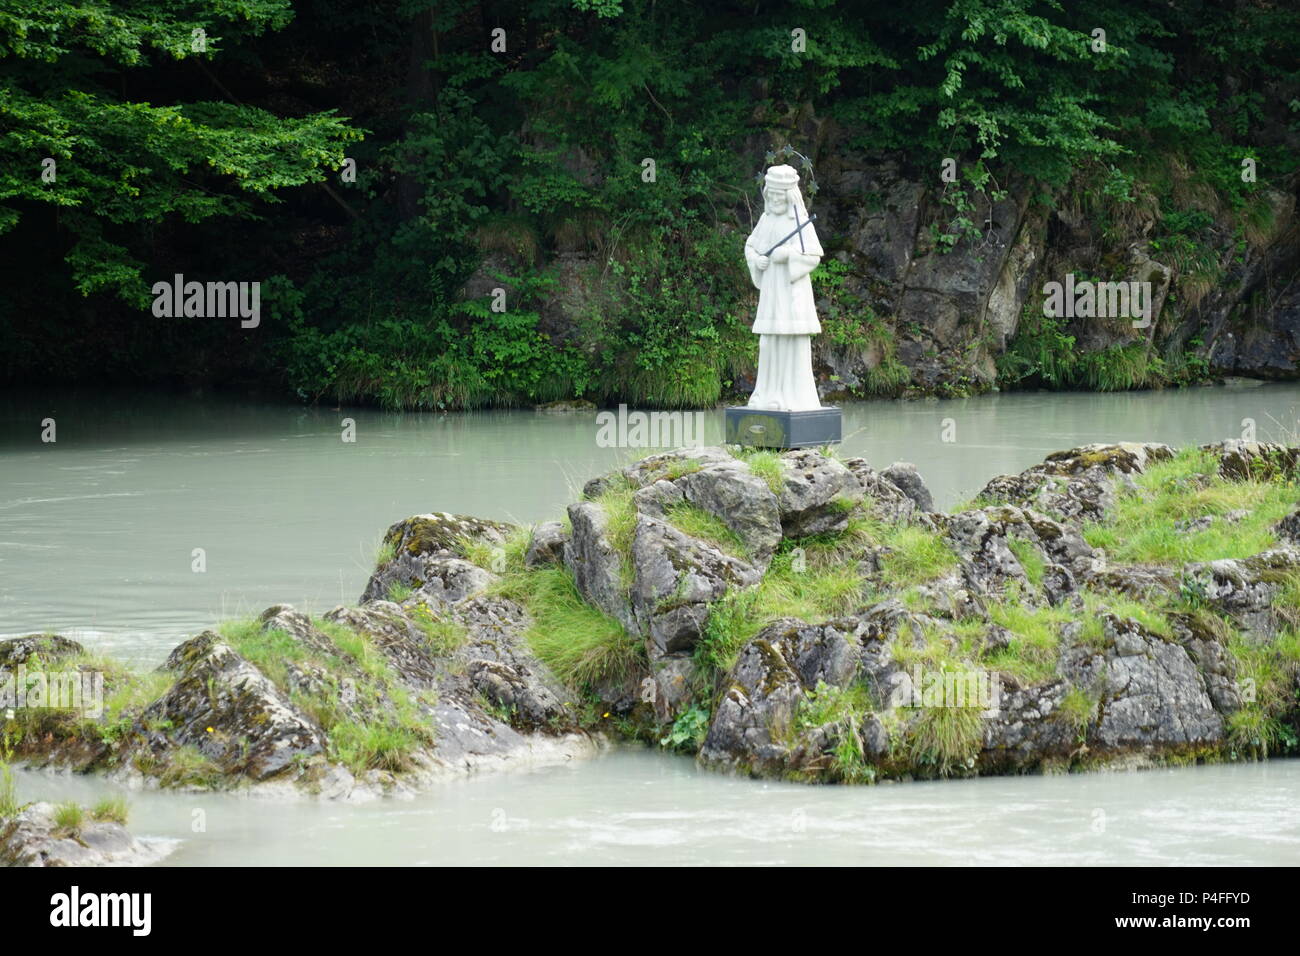 Statue de Népomucène sur l'Johannisfelsen River Inn, près de Wernstein, Vornbacher Enge, excursion en bateau à partir de Paris à Passau, Allemagne, Europe Banque D'Images